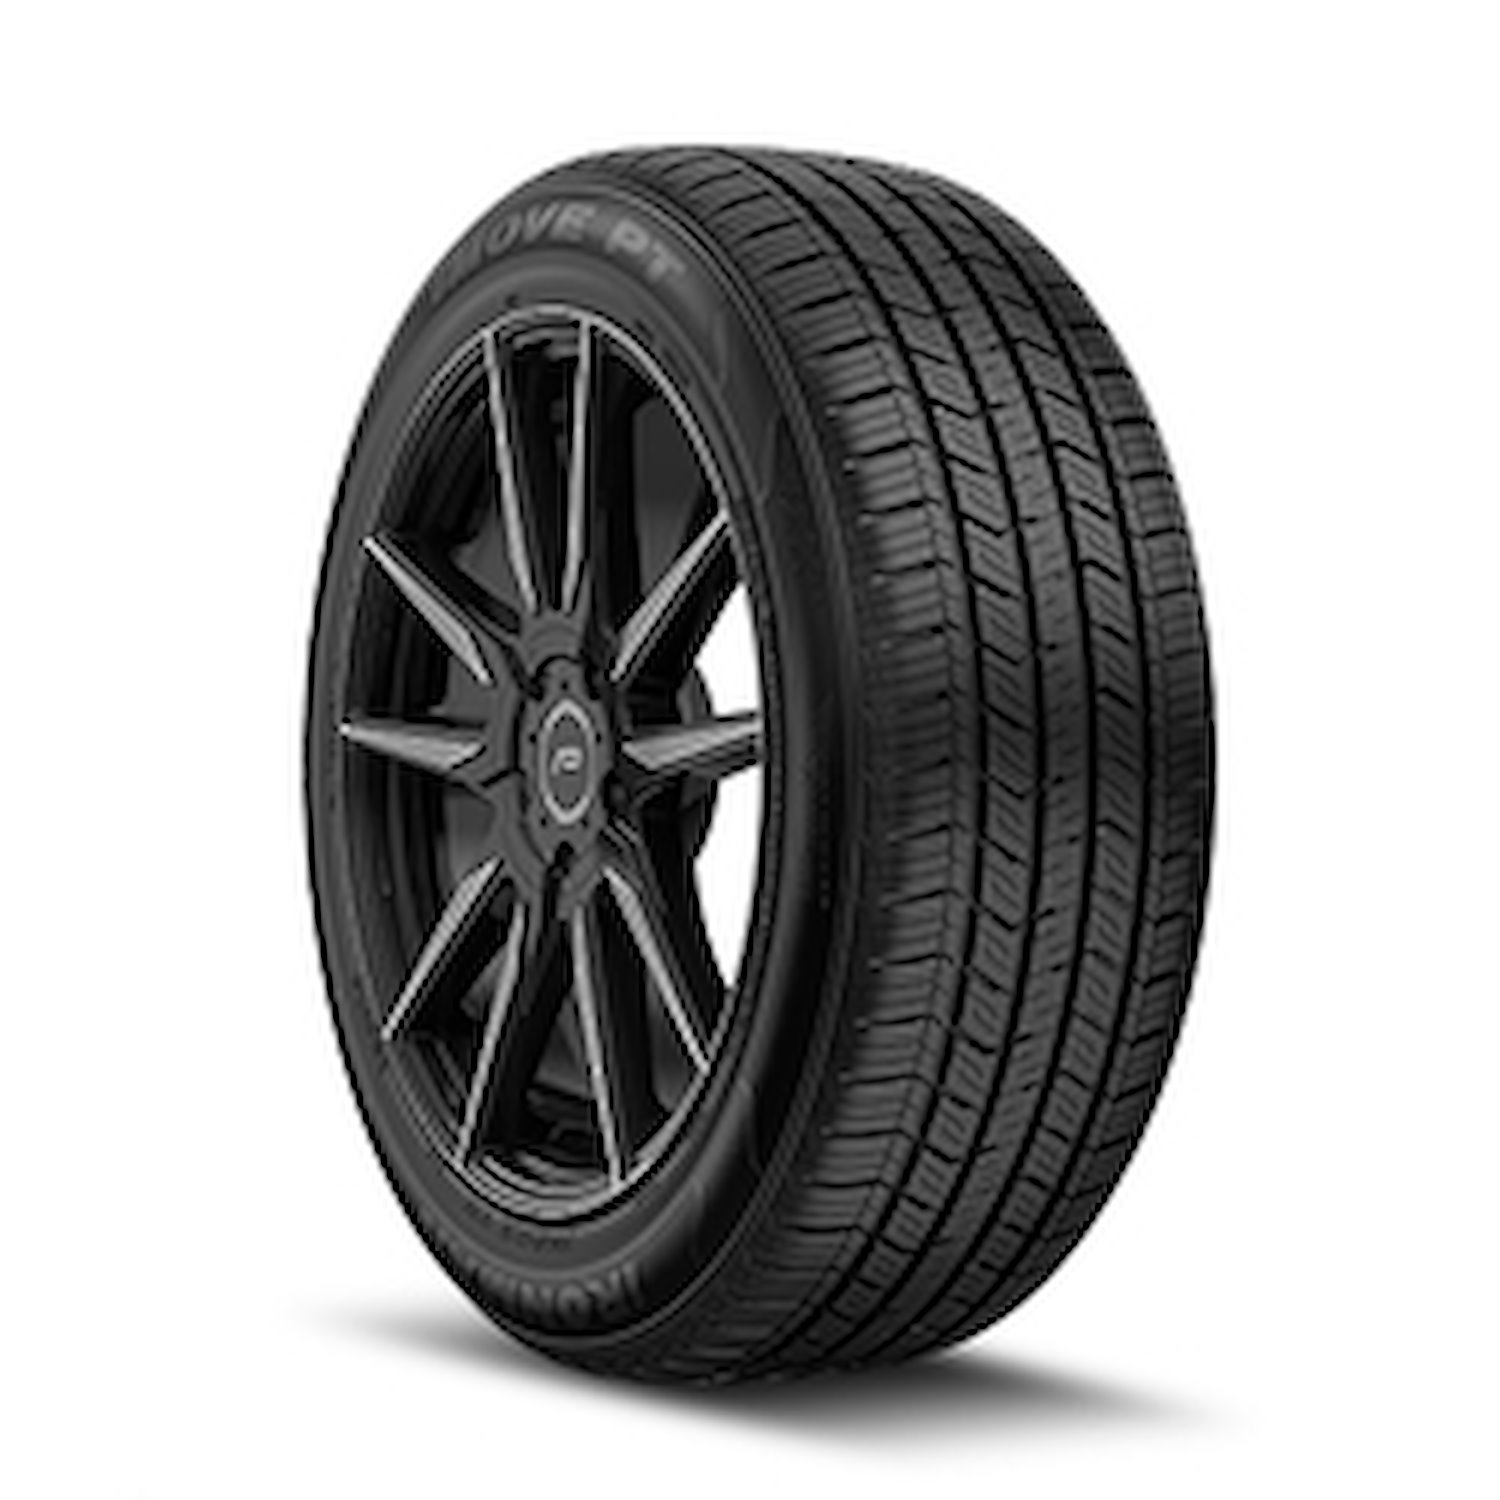 98457 iMOVE PT Tire, 185/60R15, 84H